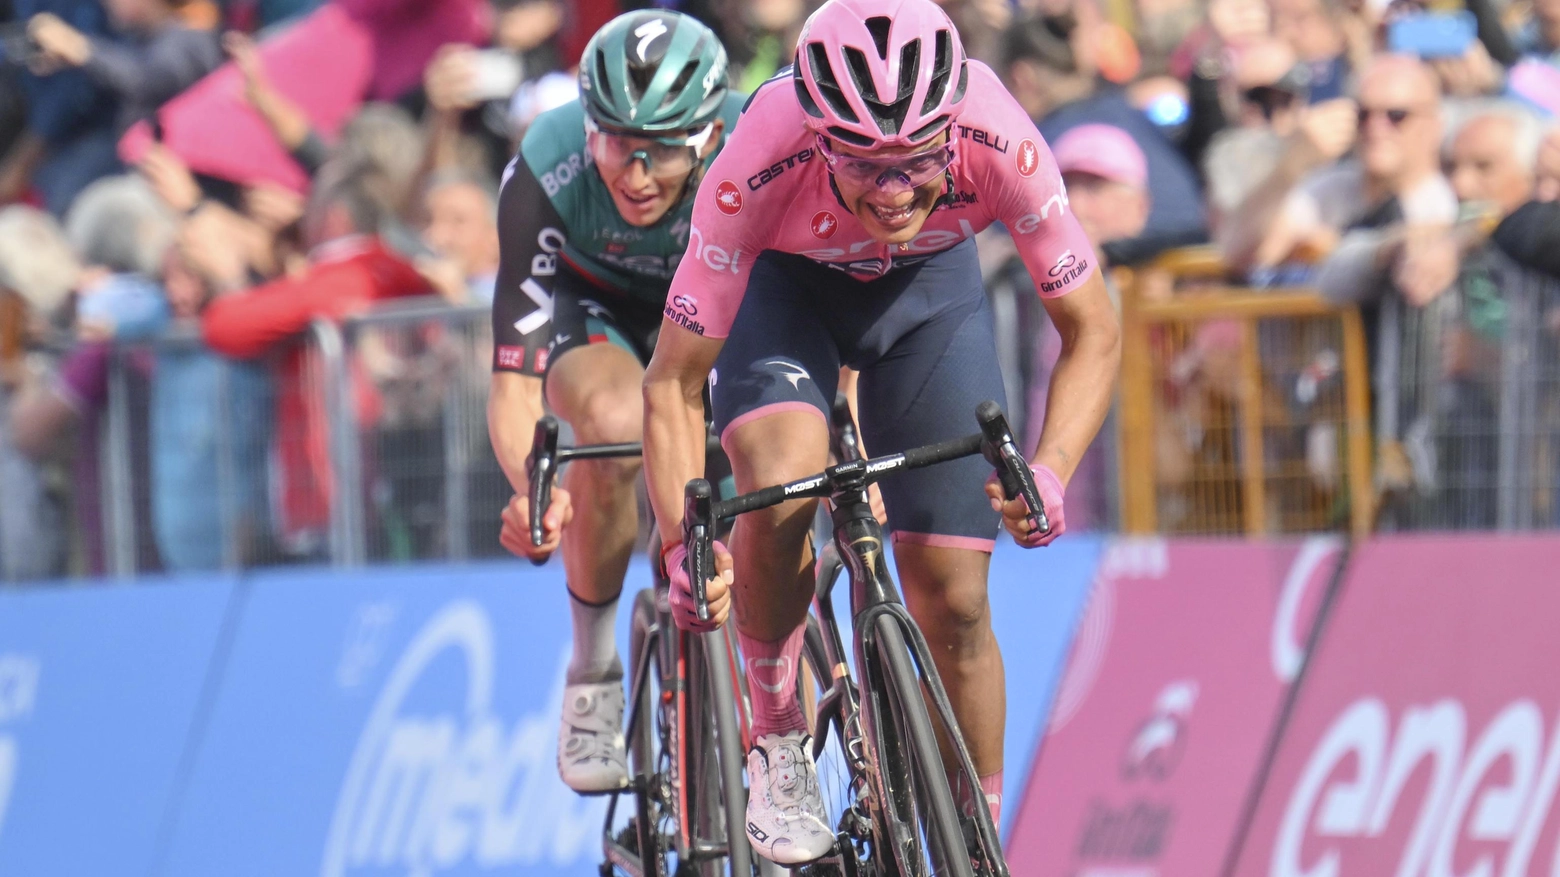 Arriva il Giro d’Italia  Un mese di eventi  in attesa della tappa  del 14 maggio